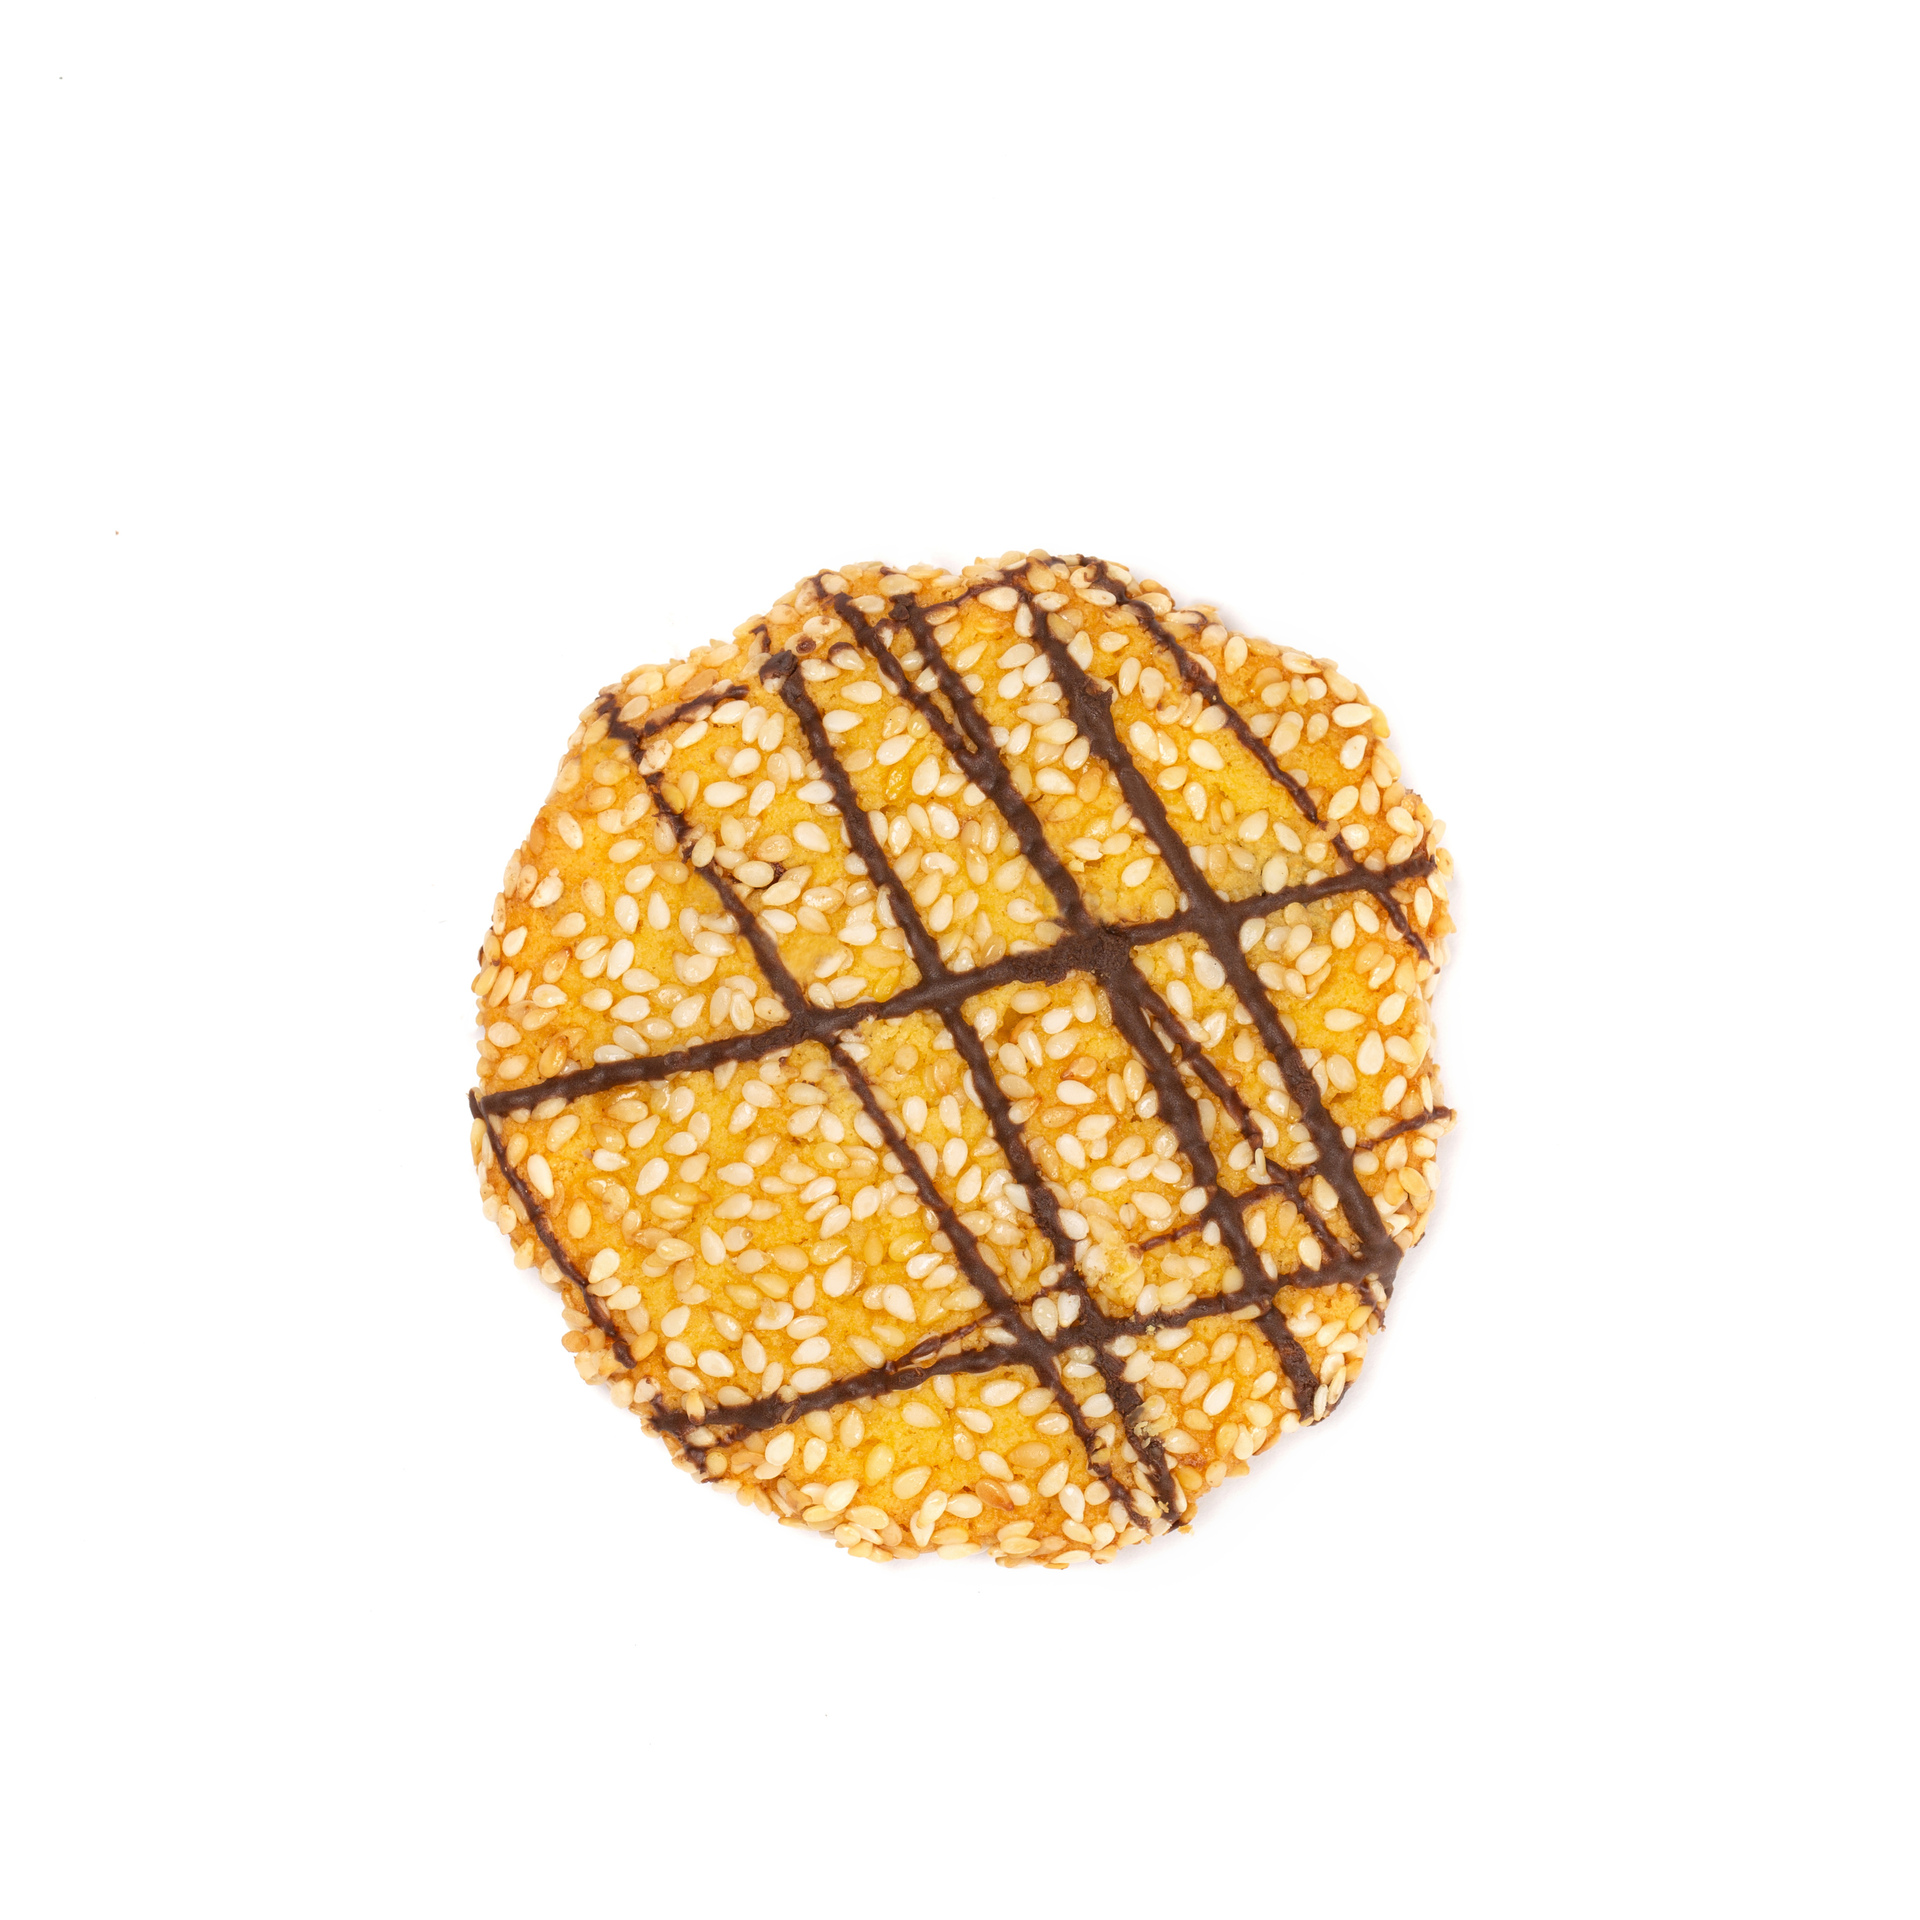 3008 - Cookies Ταχίνι Λευκή ζύμη, μέλι, σταφίδα, ταχίνι, σουσάμι και γραμώσεις από κουβερτούρα -ΝΗΣΤΙΣΙΜΟ-